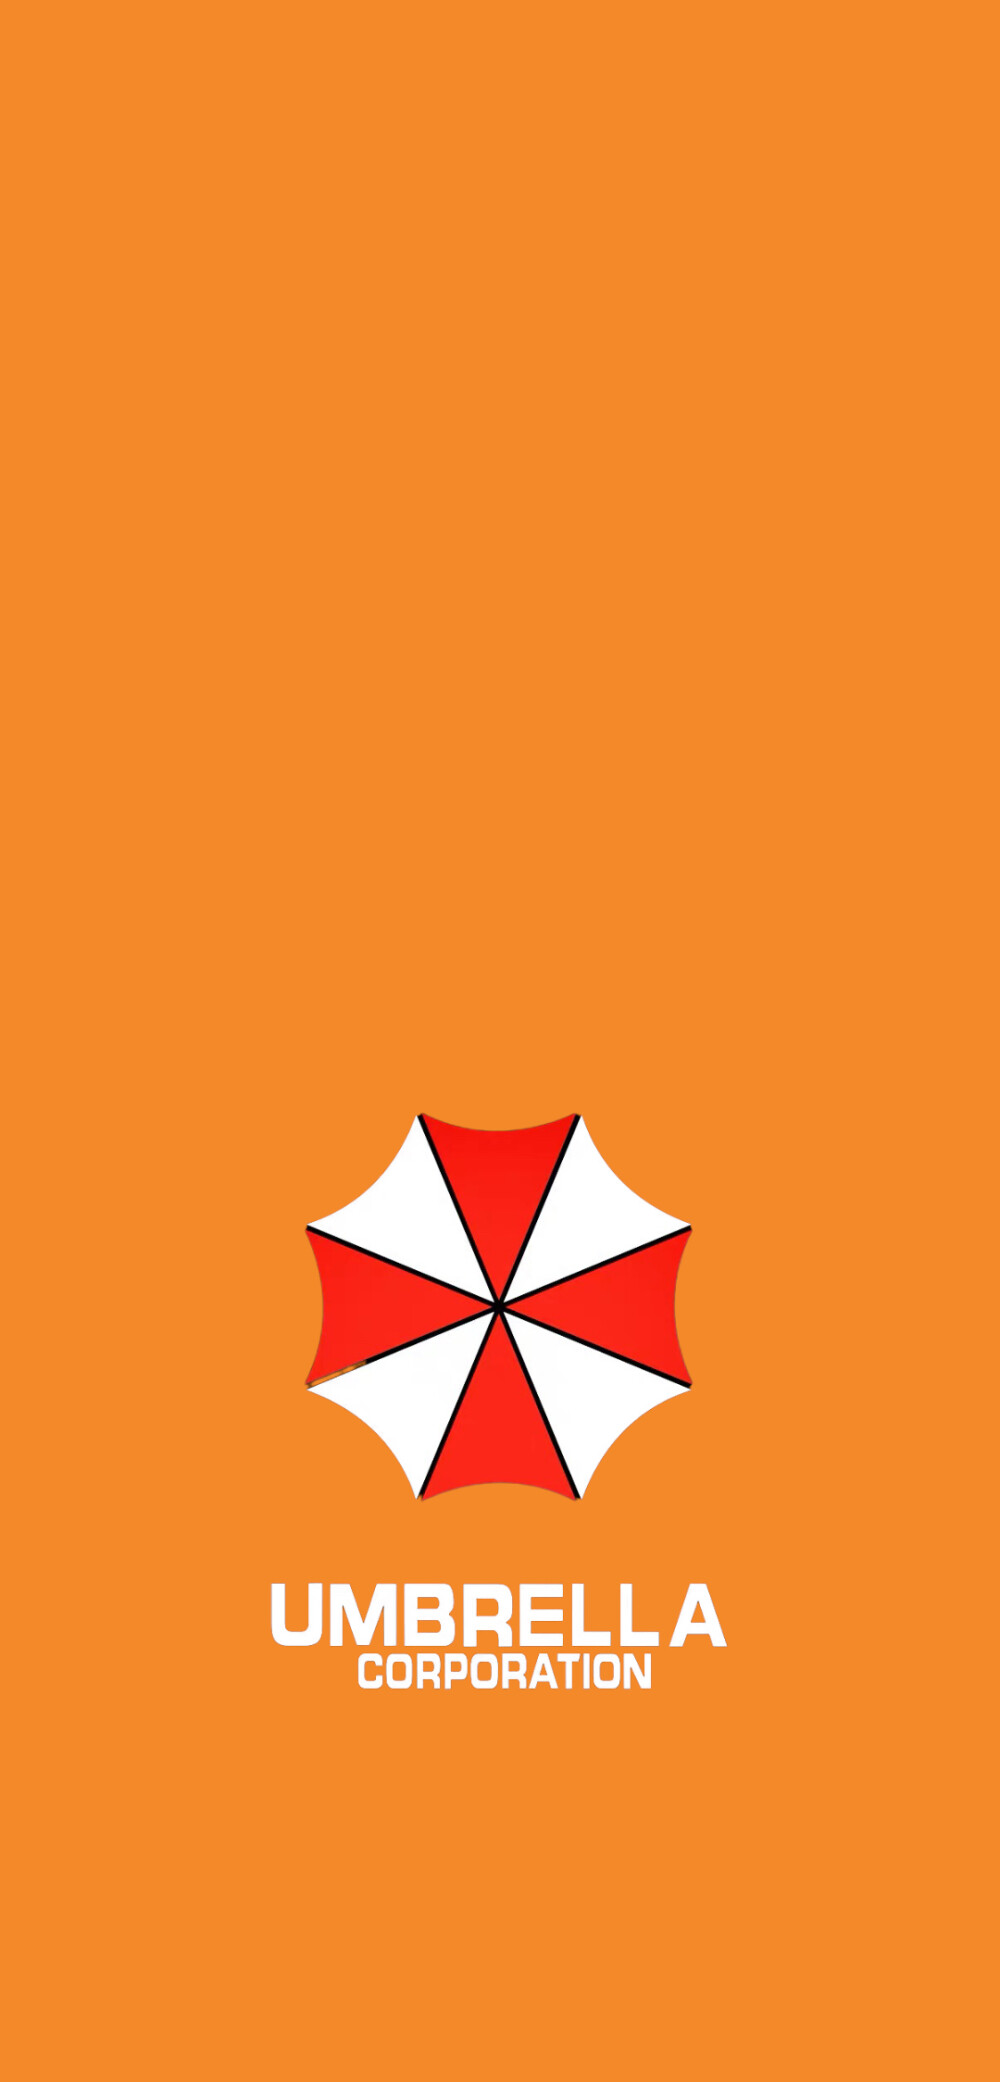 生化危机壁纸安布雷拉保护伞公司logo壁纸部分素材来源网络